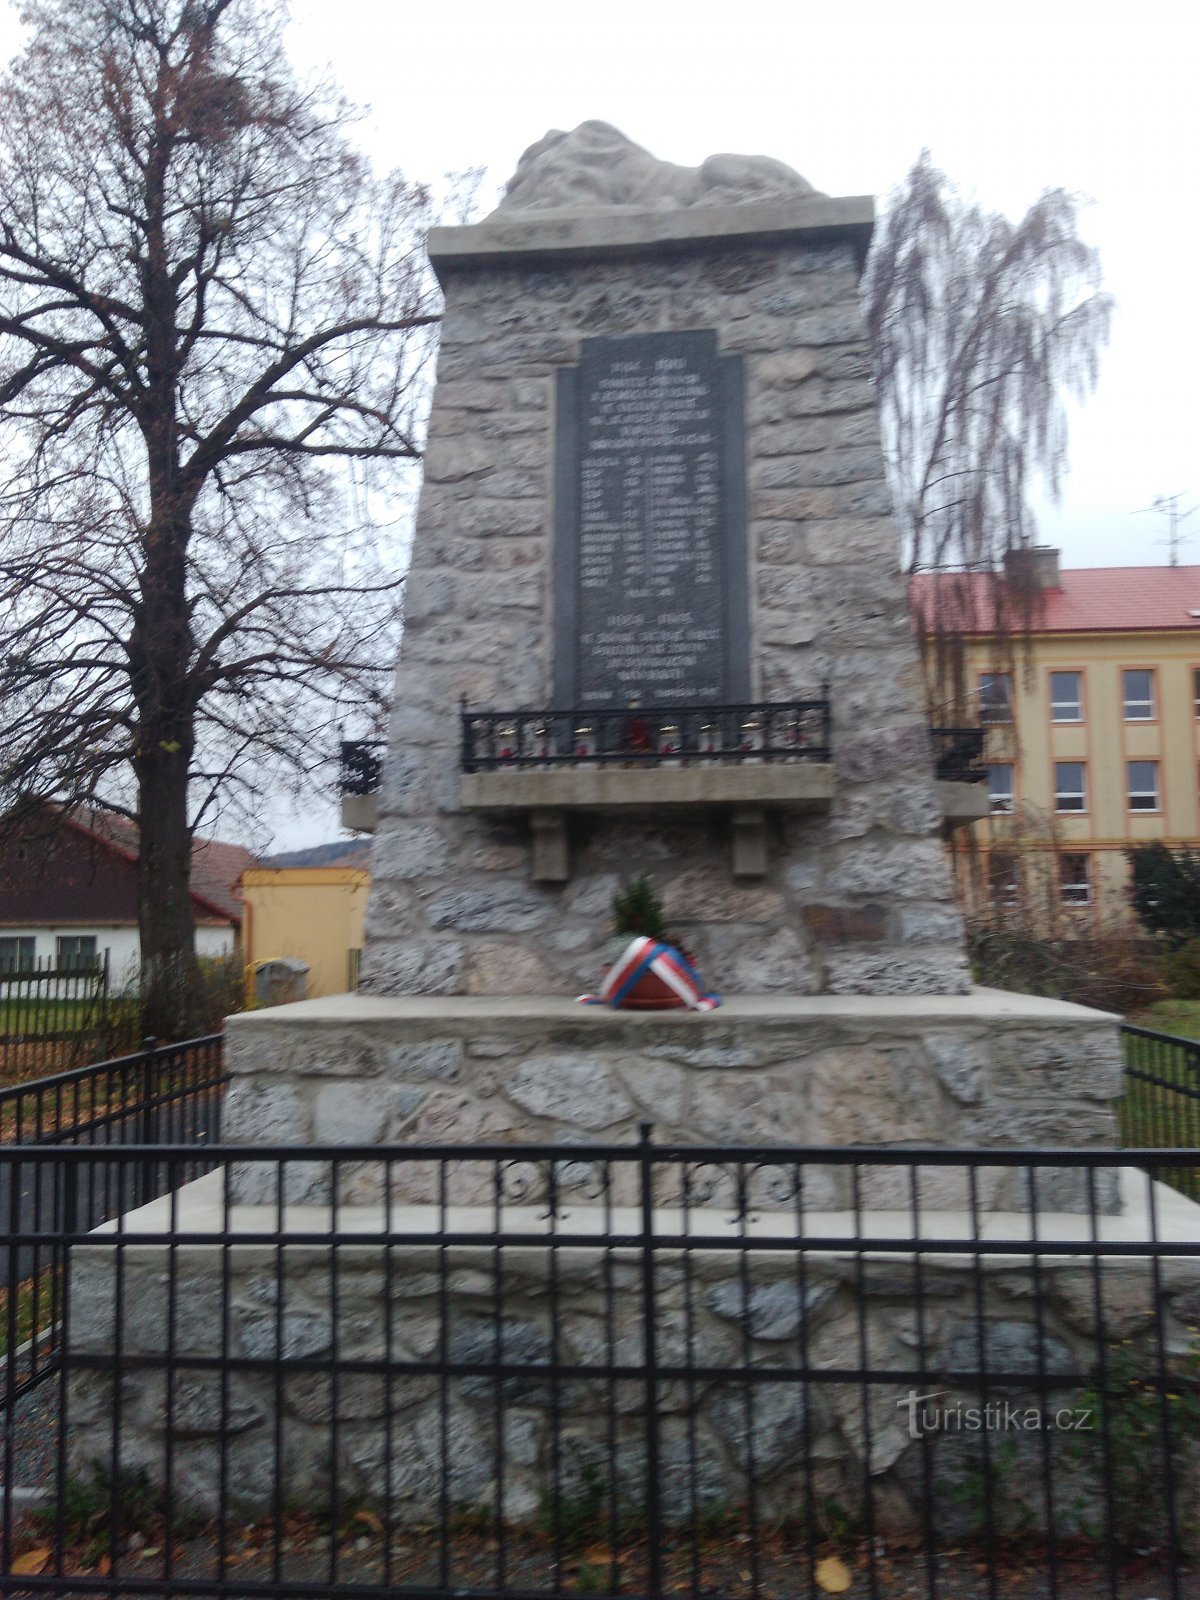 Monumentul celor căzuți în Prachovice